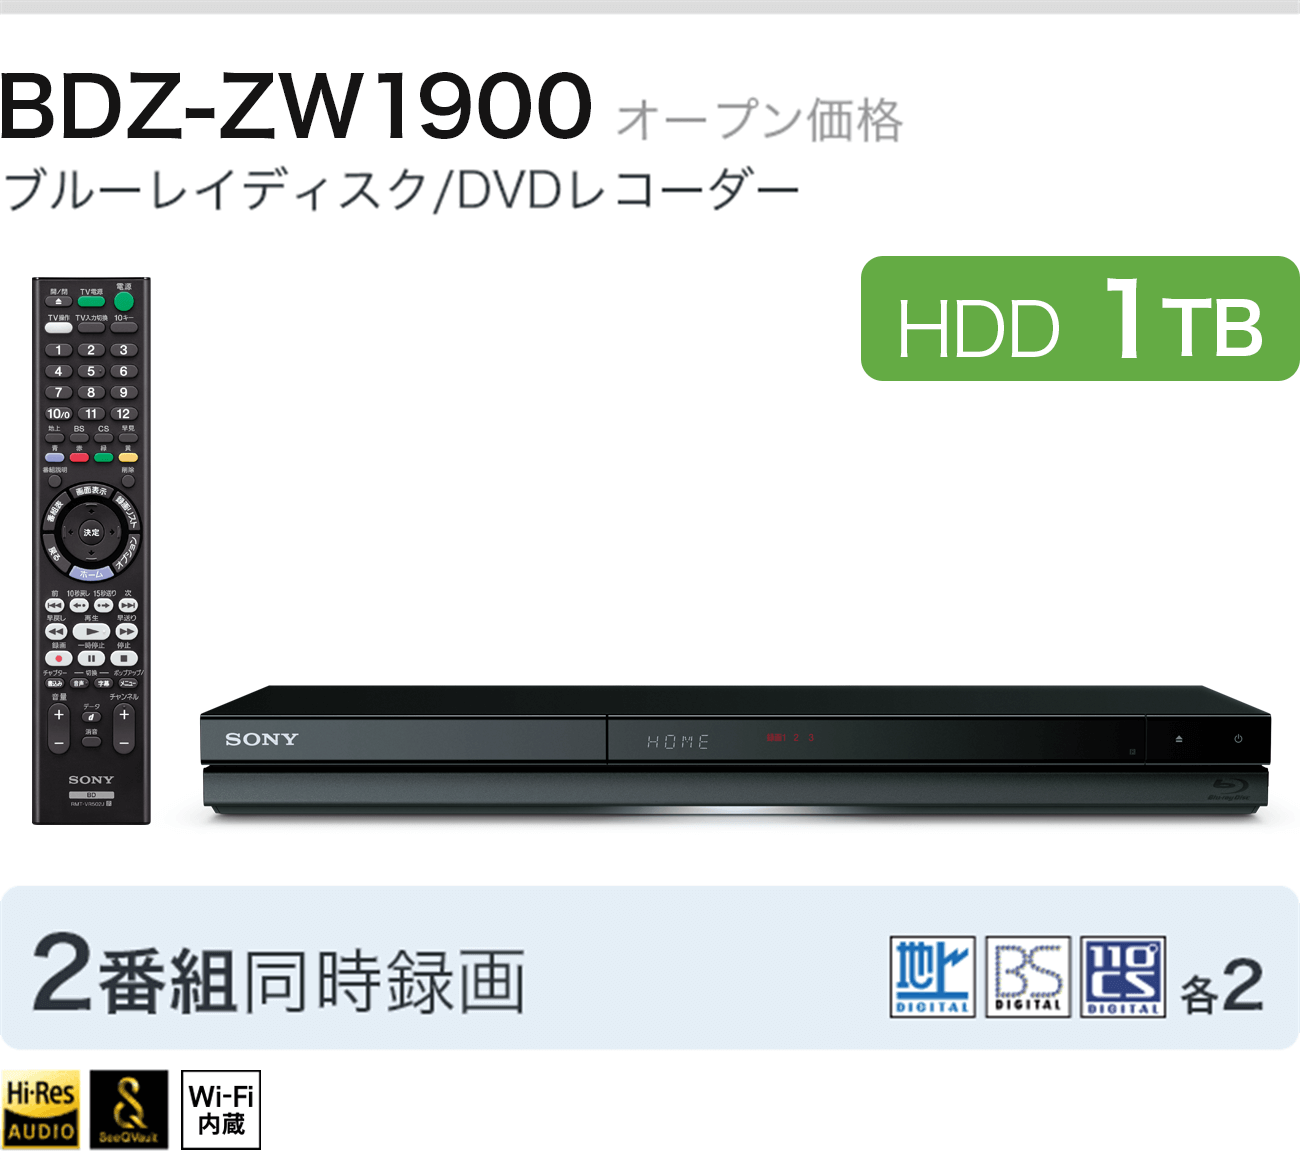 BDZ-zw1900 I[vi u[CfBXN/DVDR[_[ HDD 1TB 2ԑg^